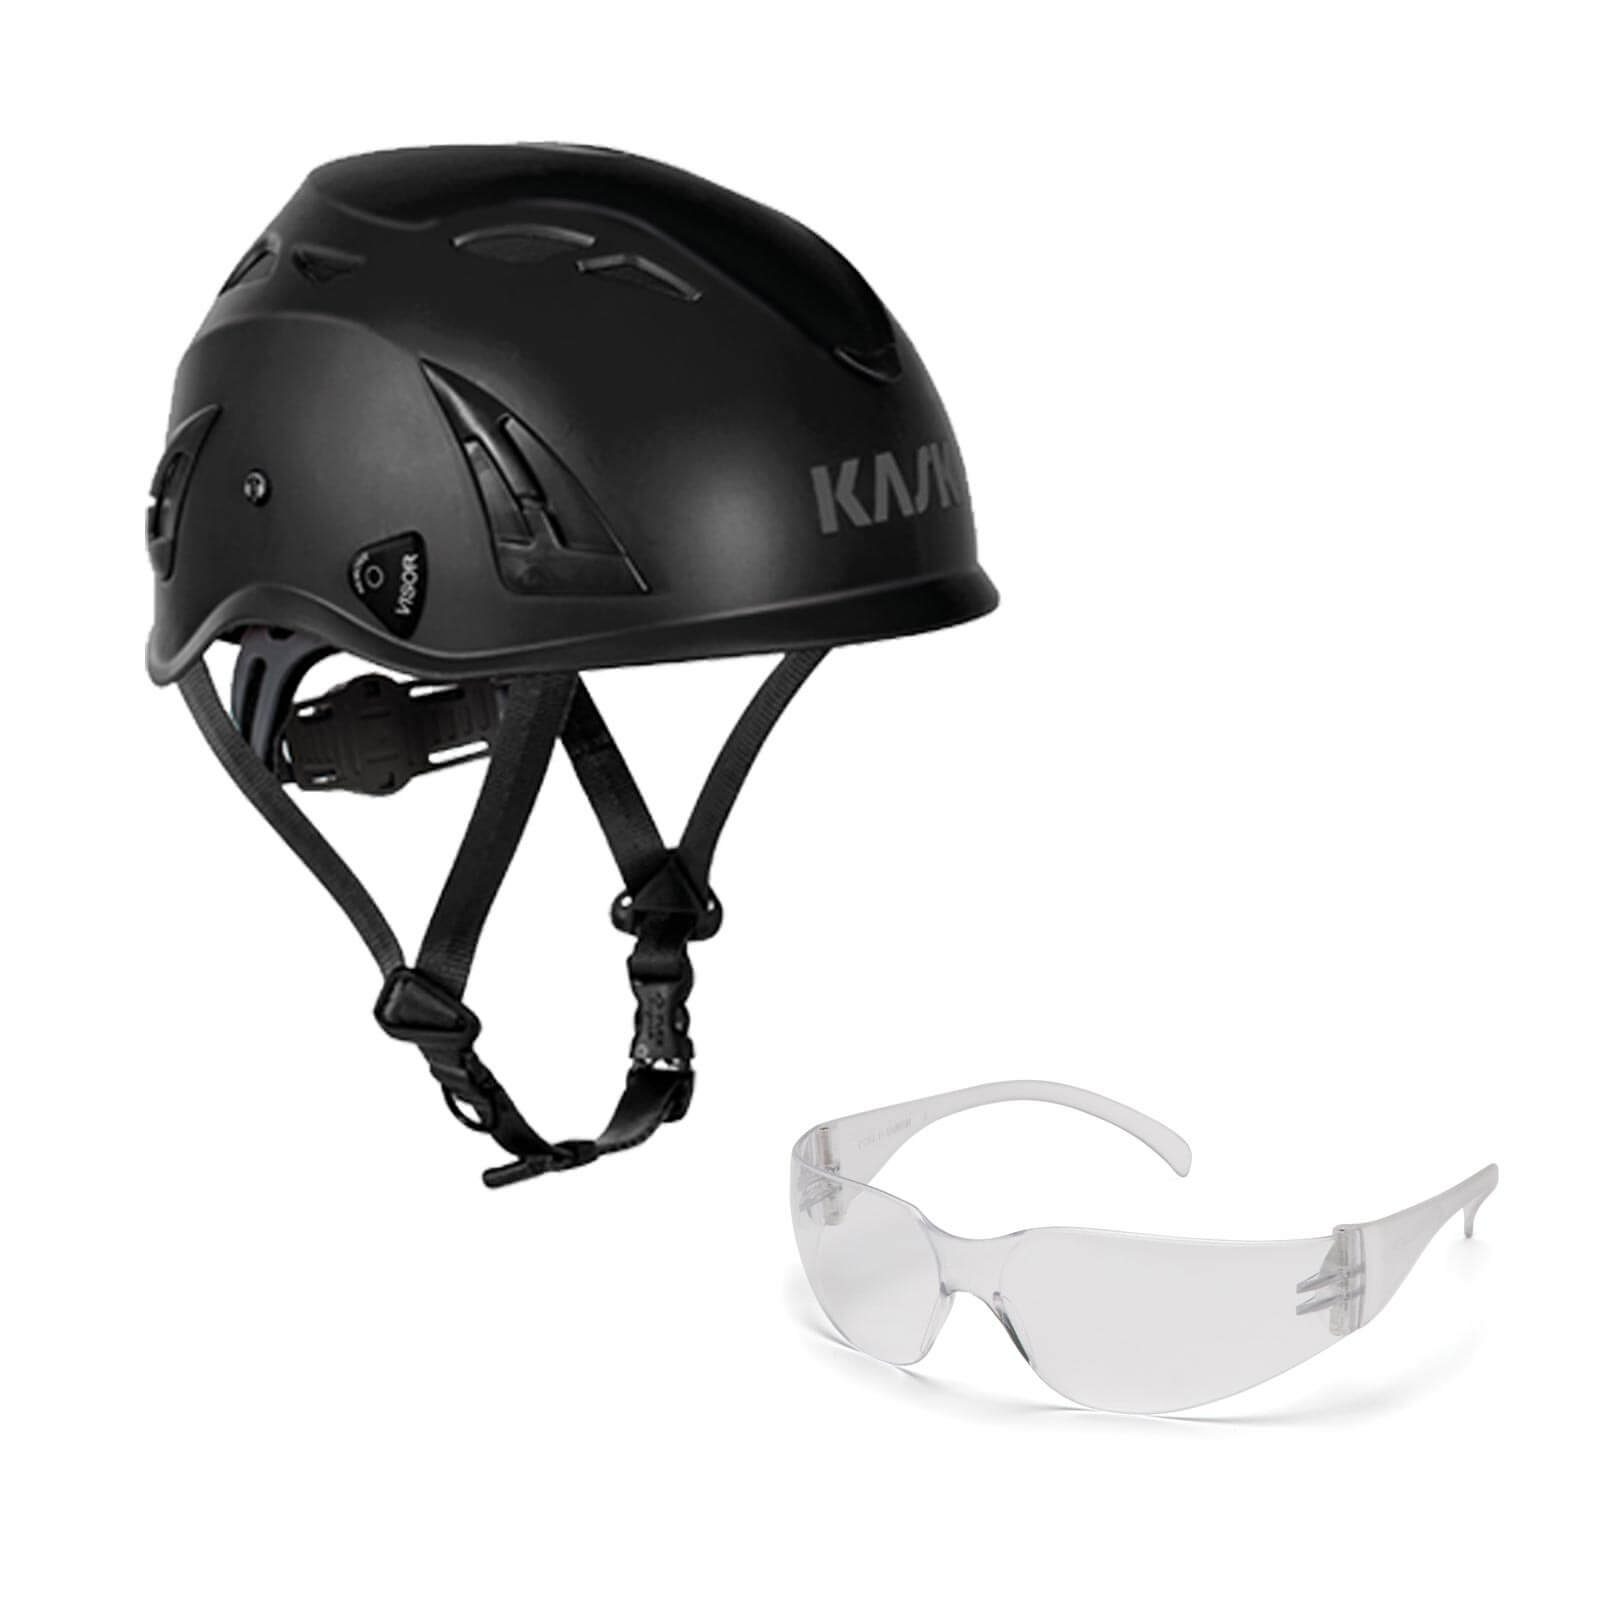 Kask Schutzhelm Bergsteigerhelm, Industriekletterhelm Plasma AQ + Schutzbrille klar schwarz